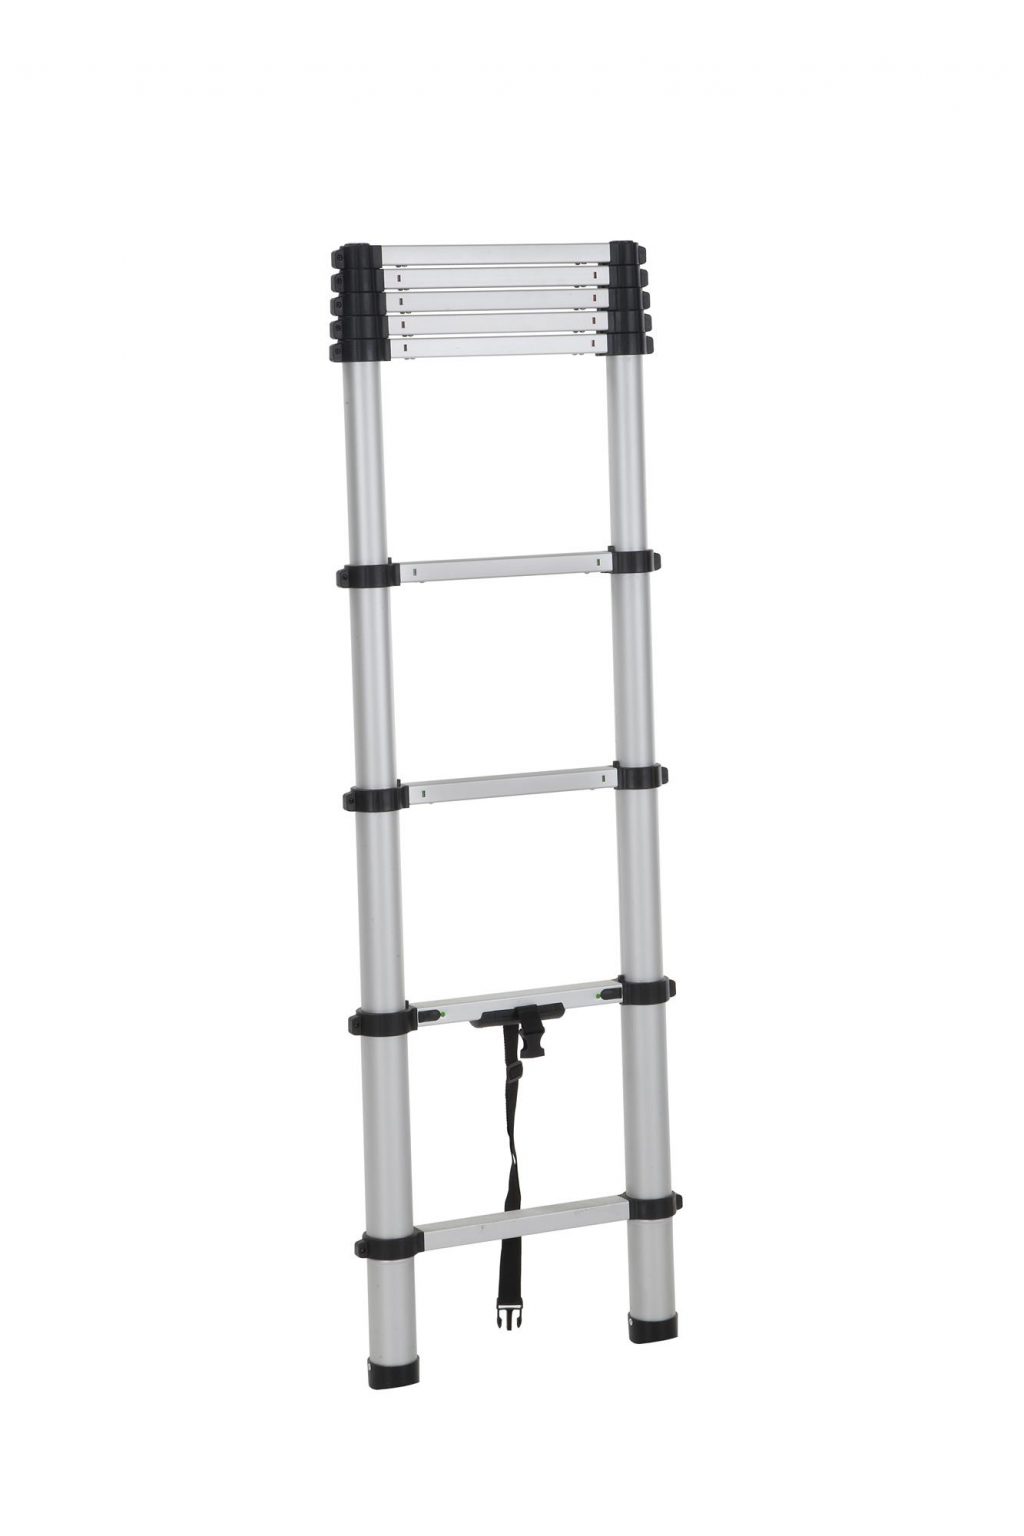 Cosco 8.5 Ft. SmartClose Aluminum Telescoping Multi-Position Ladder Cosco Smartclose Aluminum Telescoping Ladder